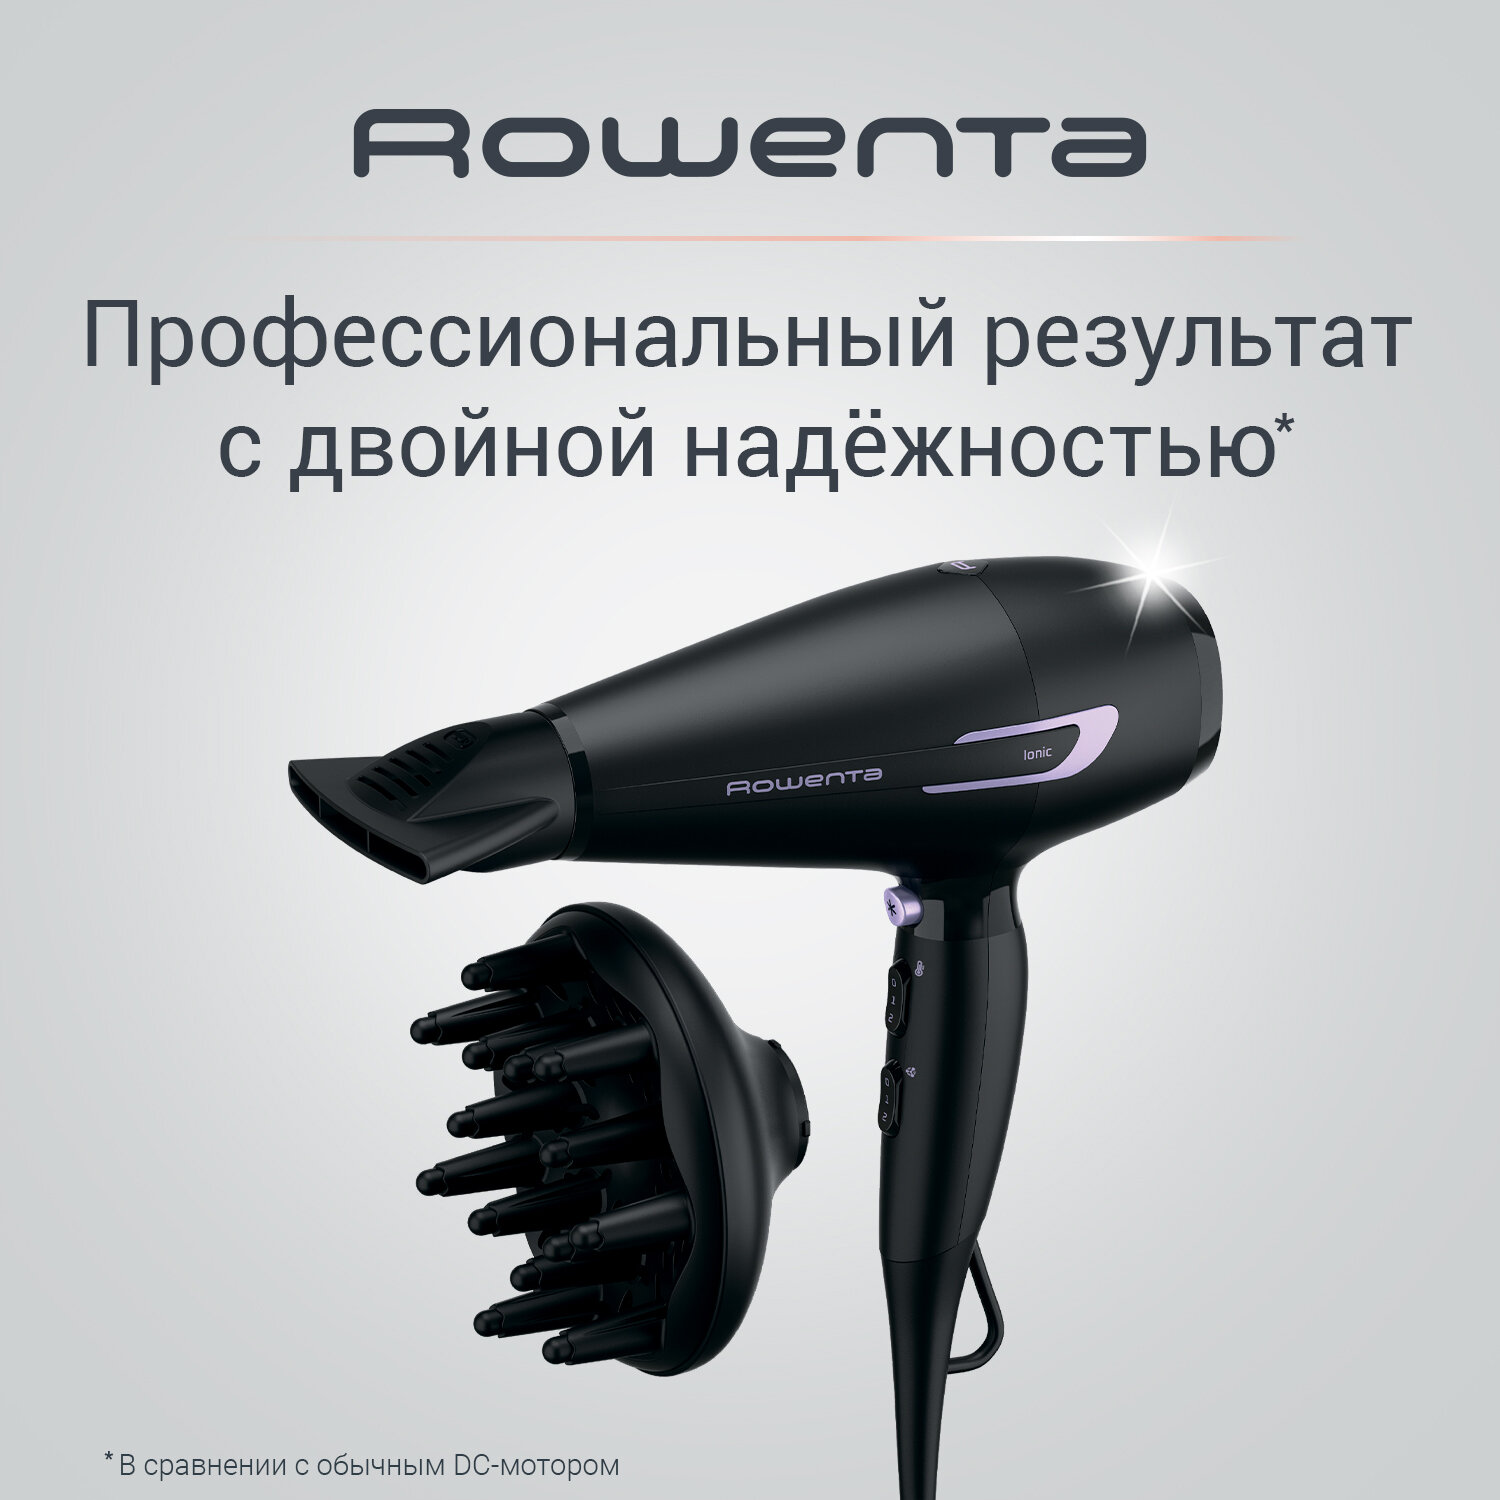 Фен для волос Rowenta Pro Power+ CV7210F0, черный, 2200 Вт, ионный генератор, диффузор - фотография № 1